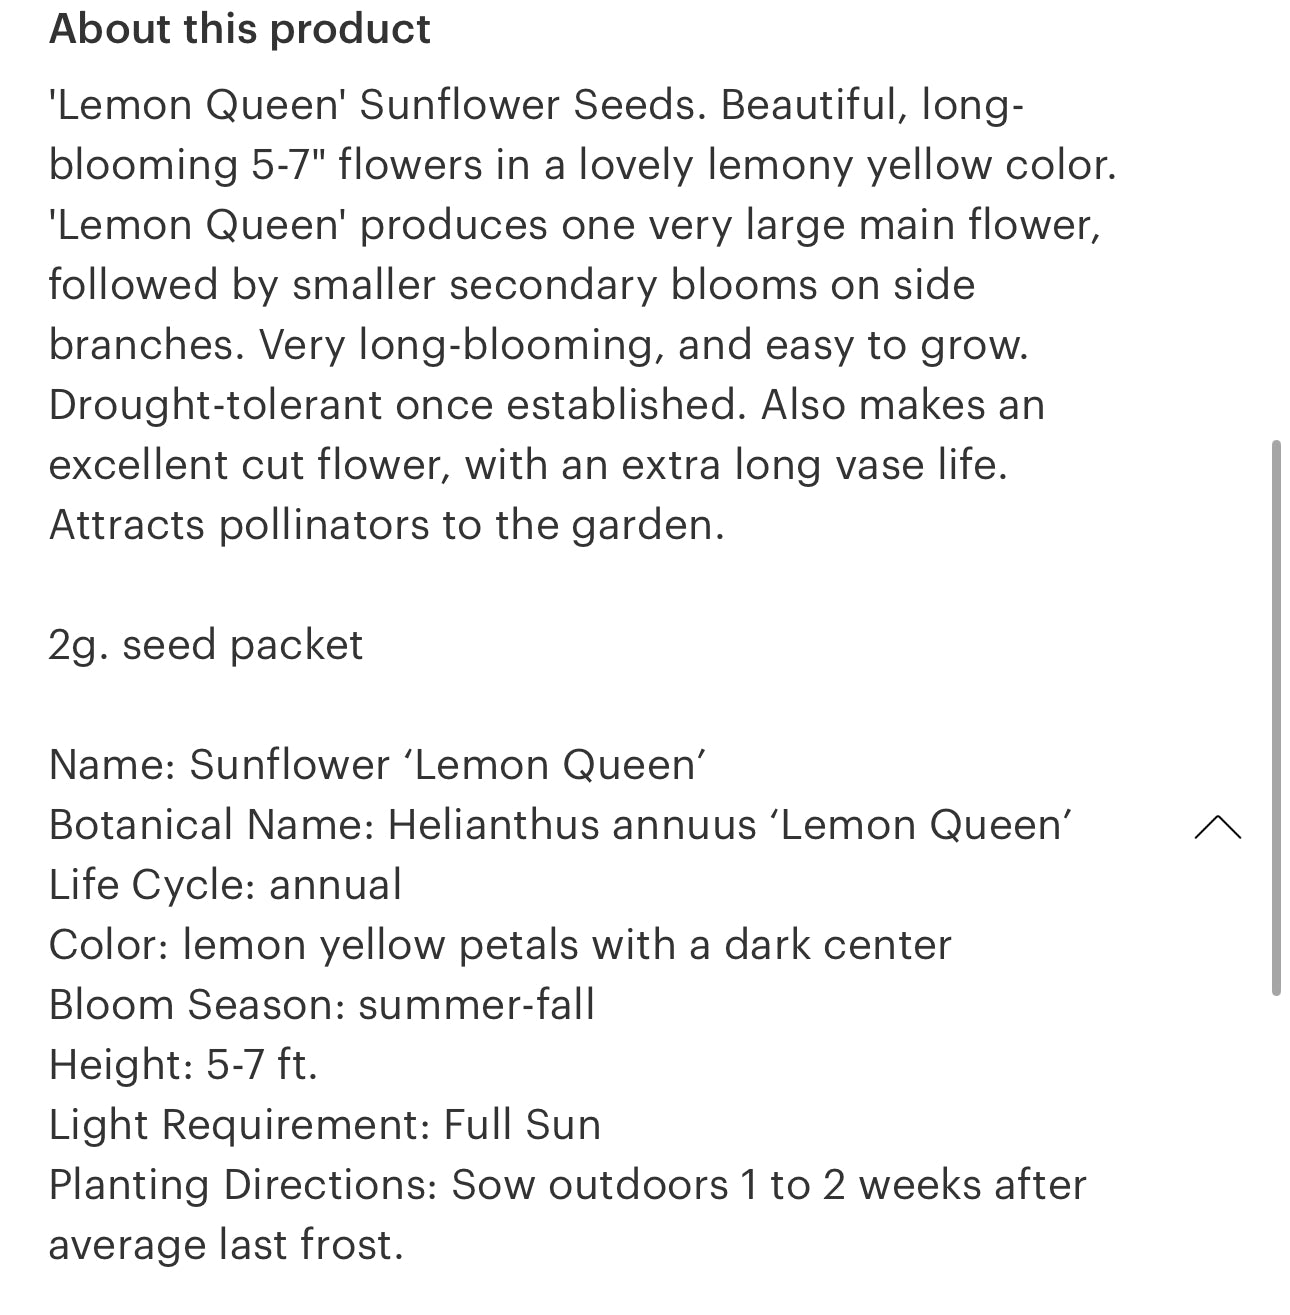 Sunflower Seeds “Lemon Queen”